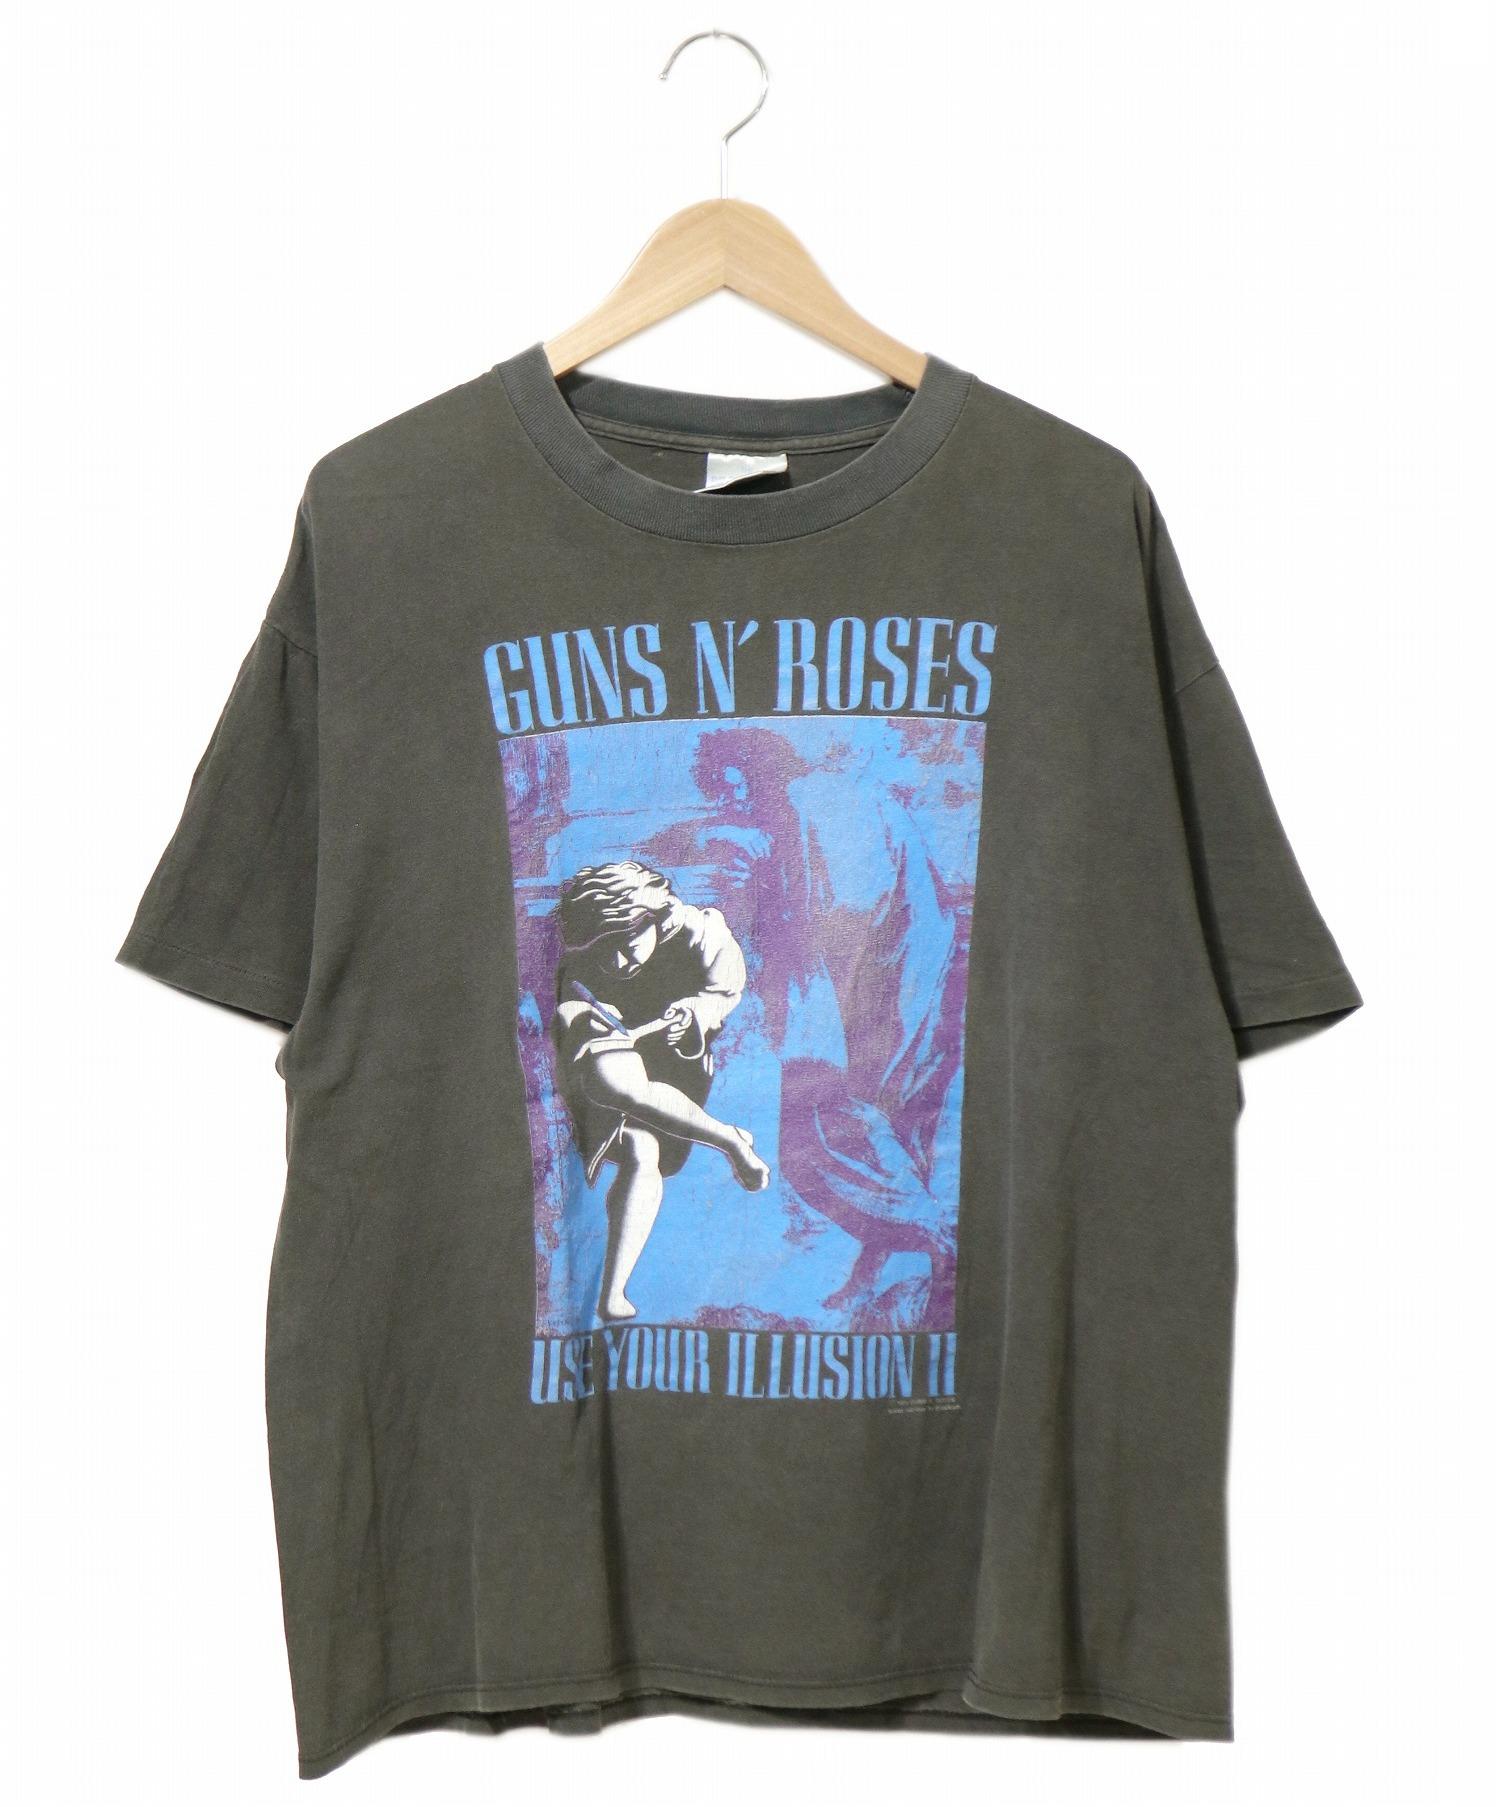 GUNS N ROSES (ガンズアンドローゼス) 90’sバンドTシャツ サイズ:XL 91年コピーライト・USA製ボディ・USE YOUR  ILLUSION 2